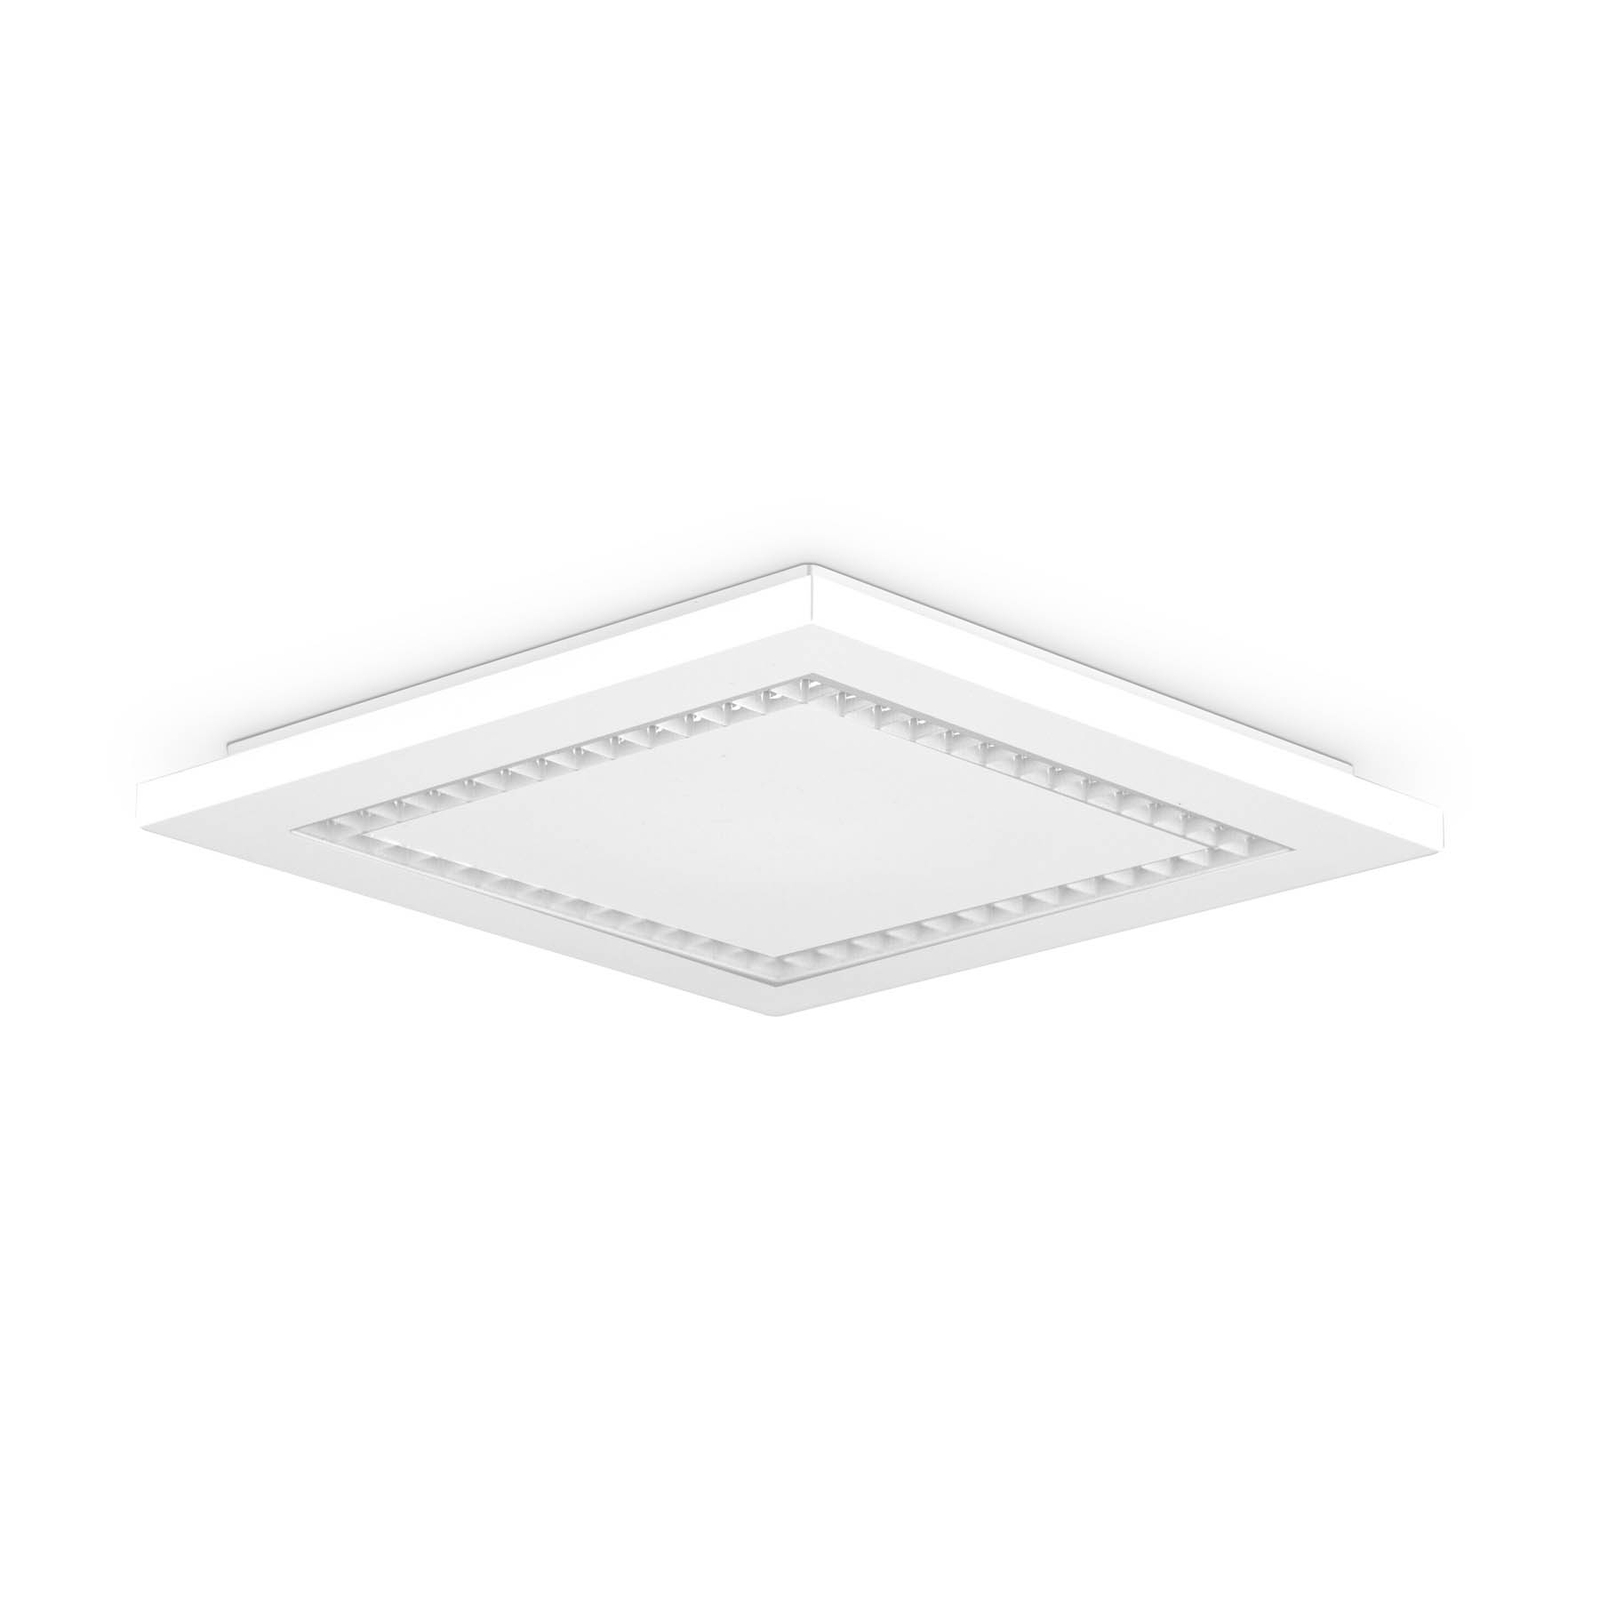 EVN ALQ LED panel white 15 W 30 x 30 cm 3,000 K